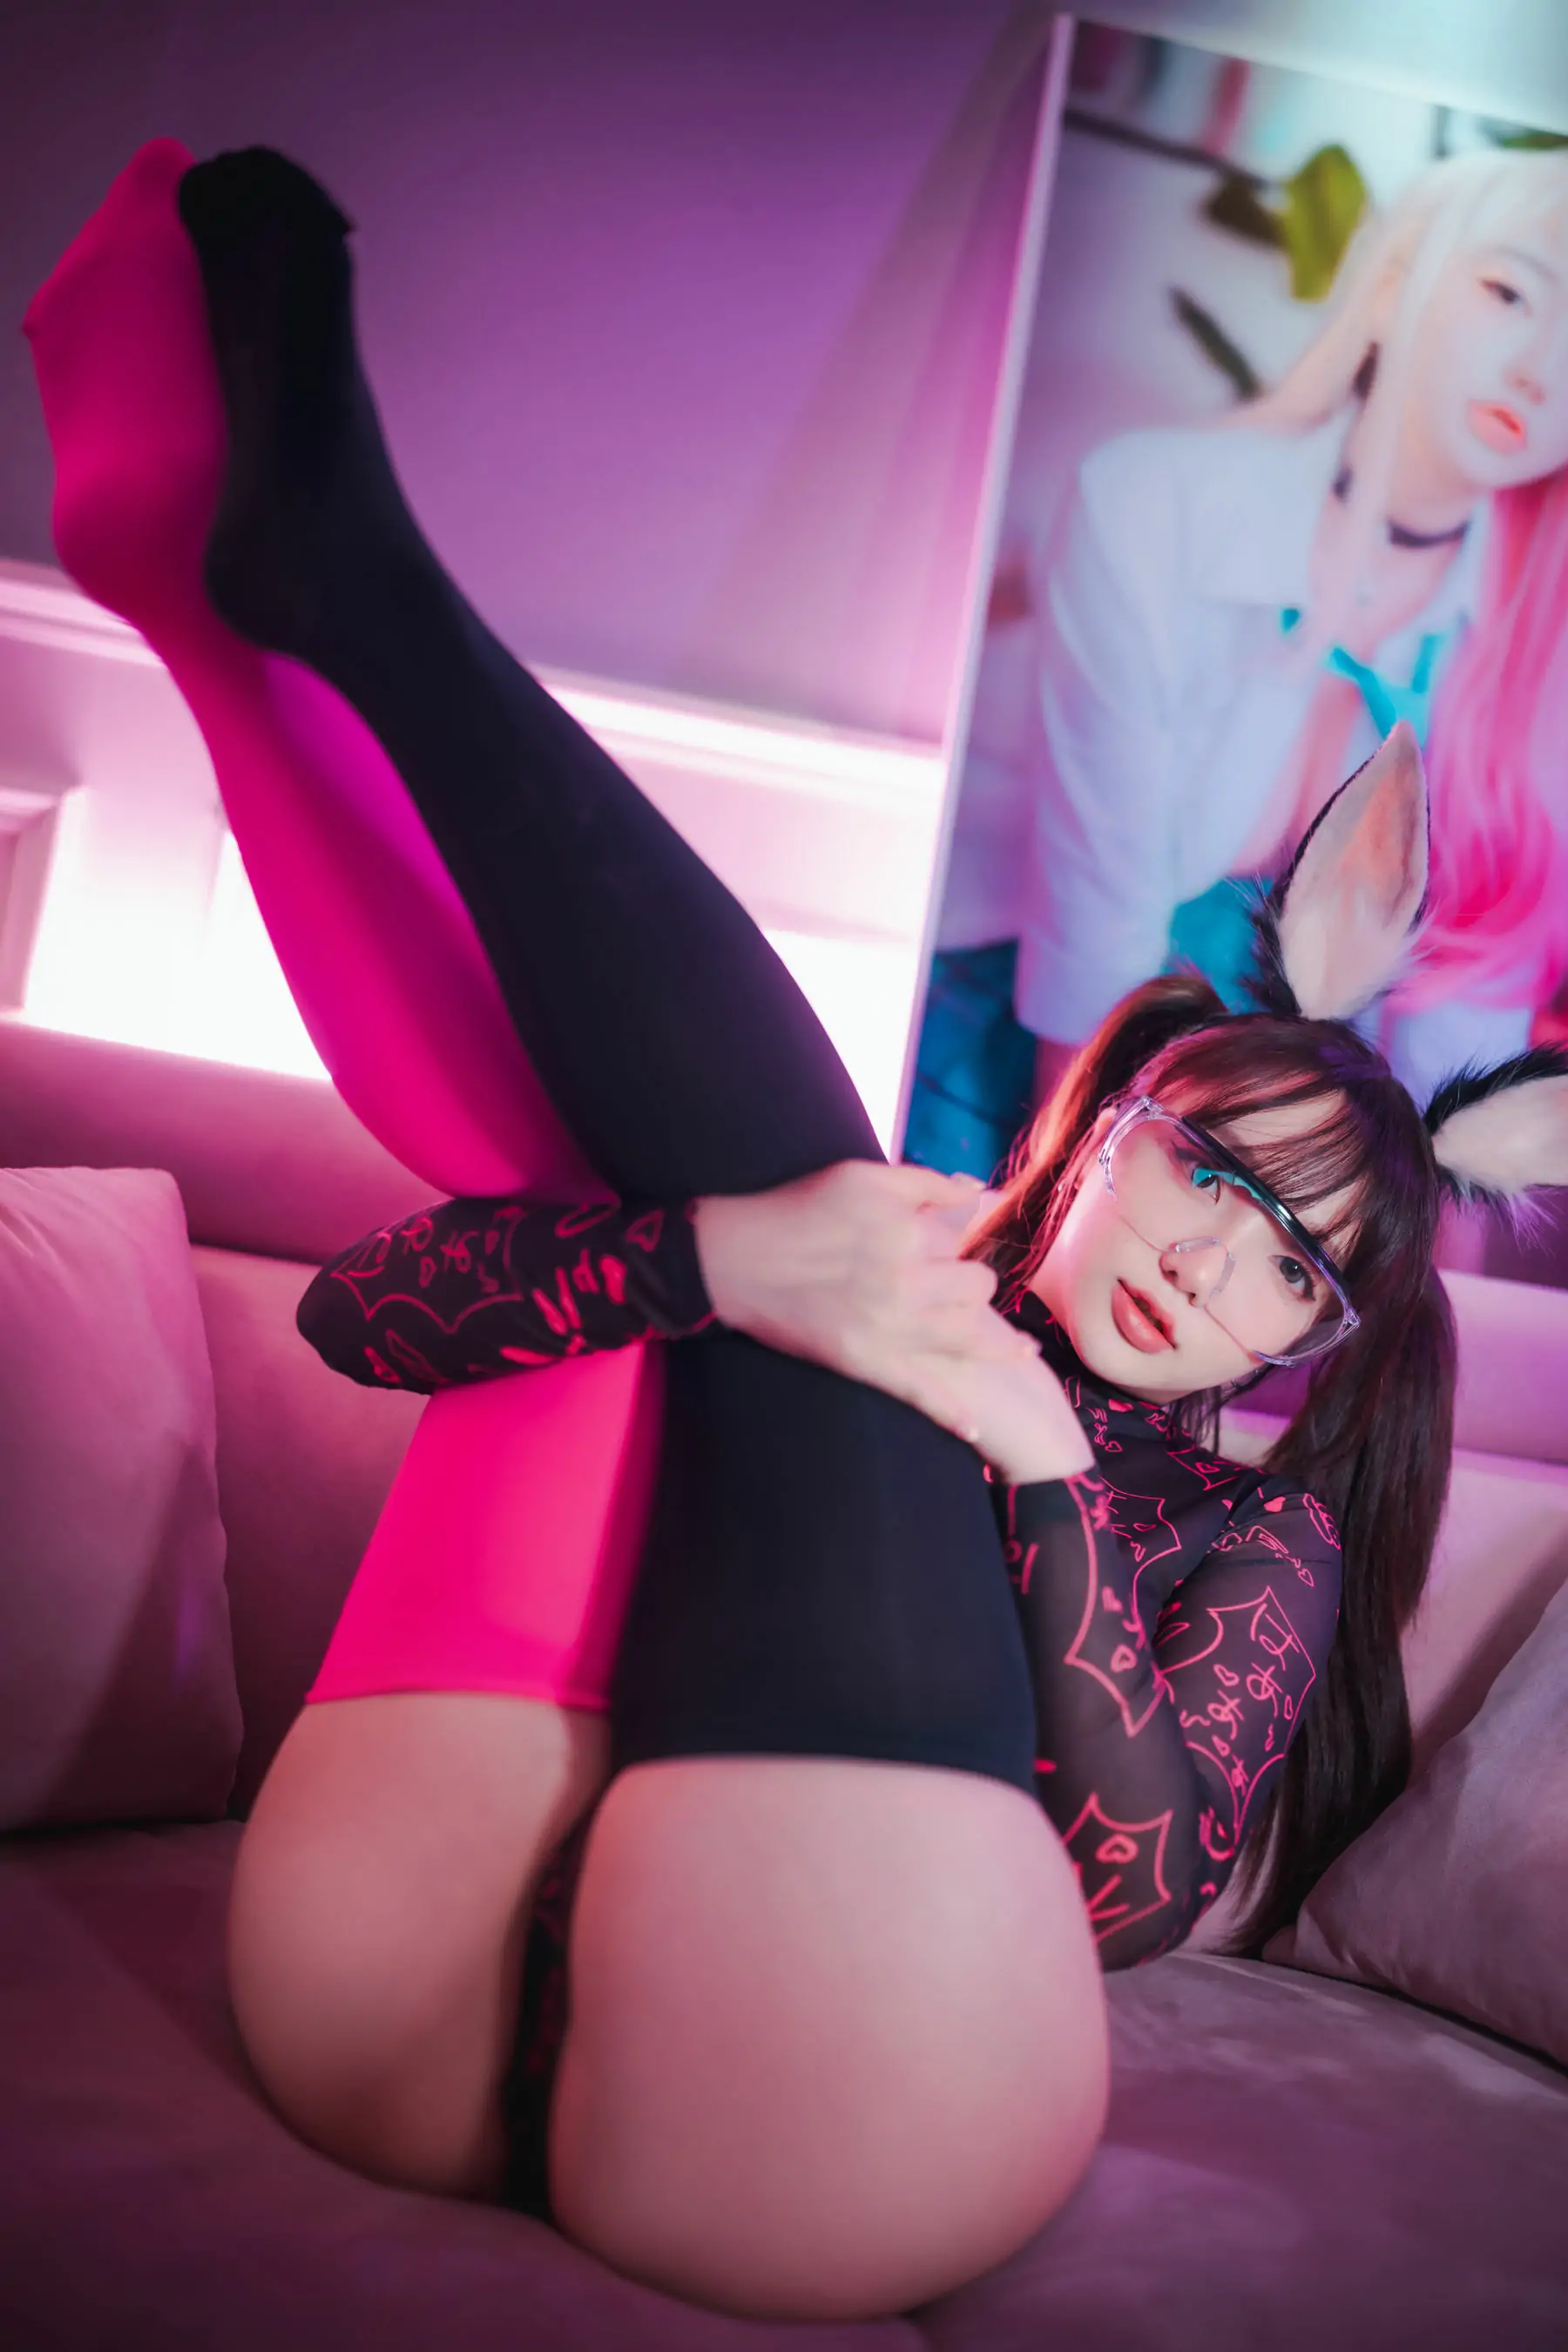 [DJAWA]  Yeeun - Retro Gaming Girl